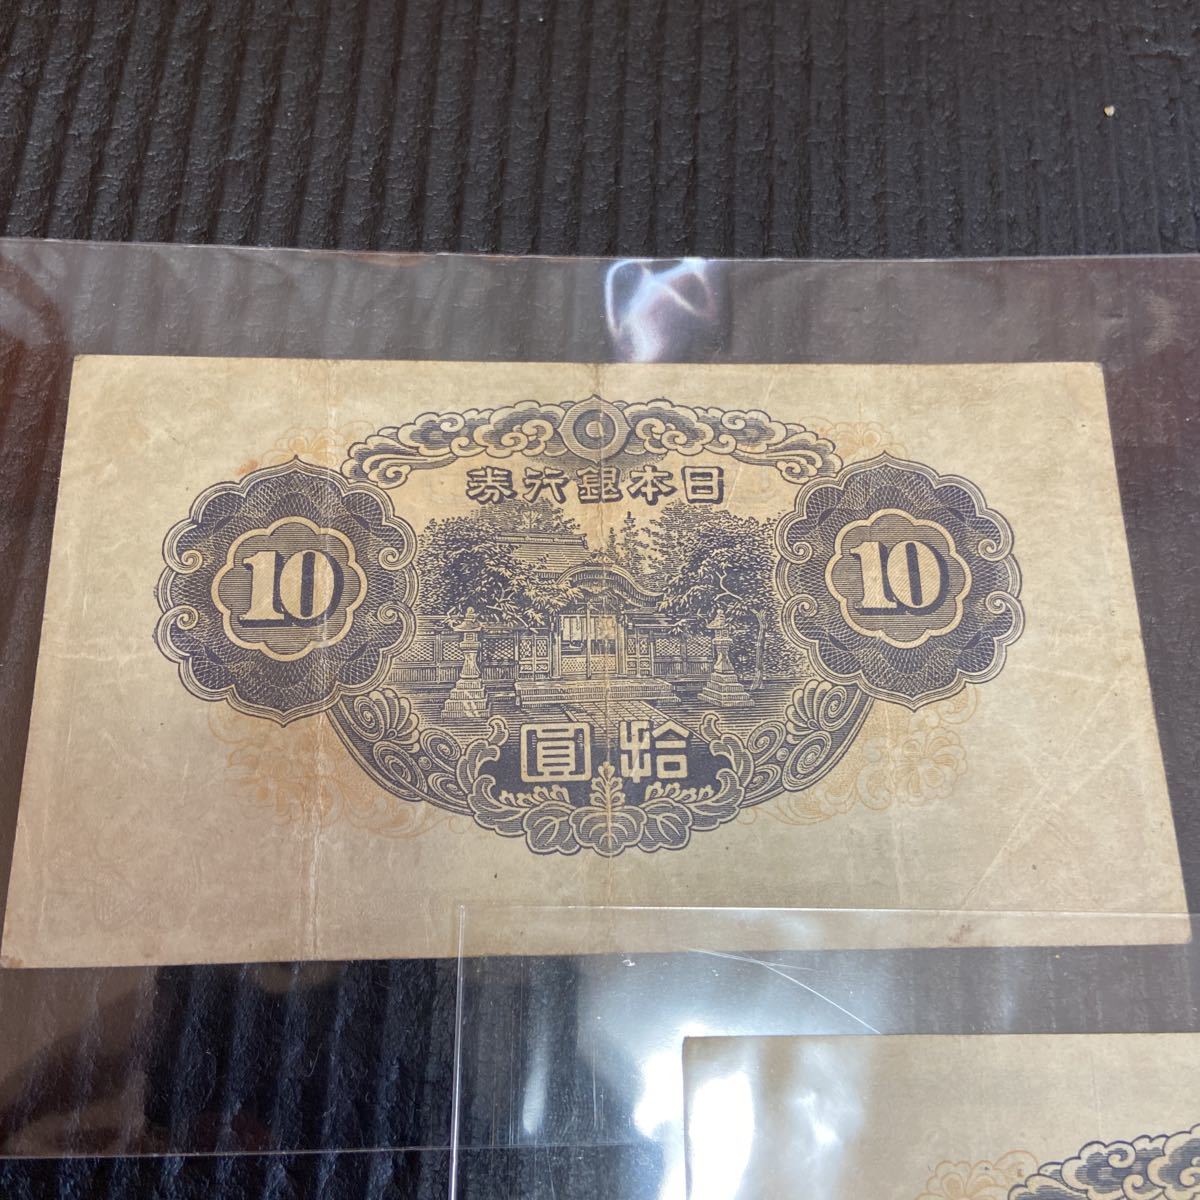 10円札 十円札 1次 一次 兊換券 和気清麿 紙幣 古銭 旧札 3枚セット 